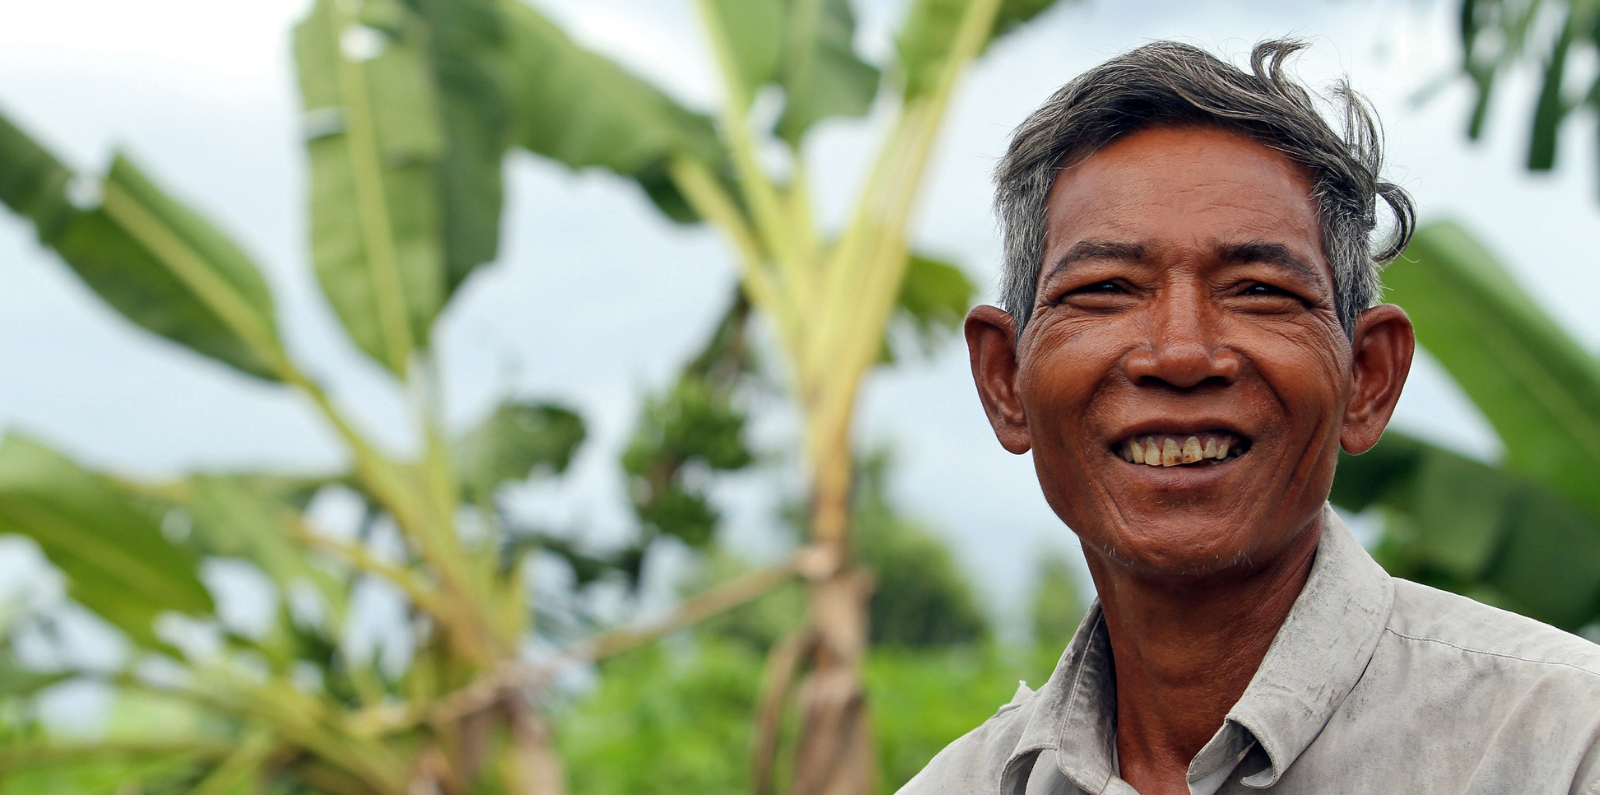 Farmer in Cambodia